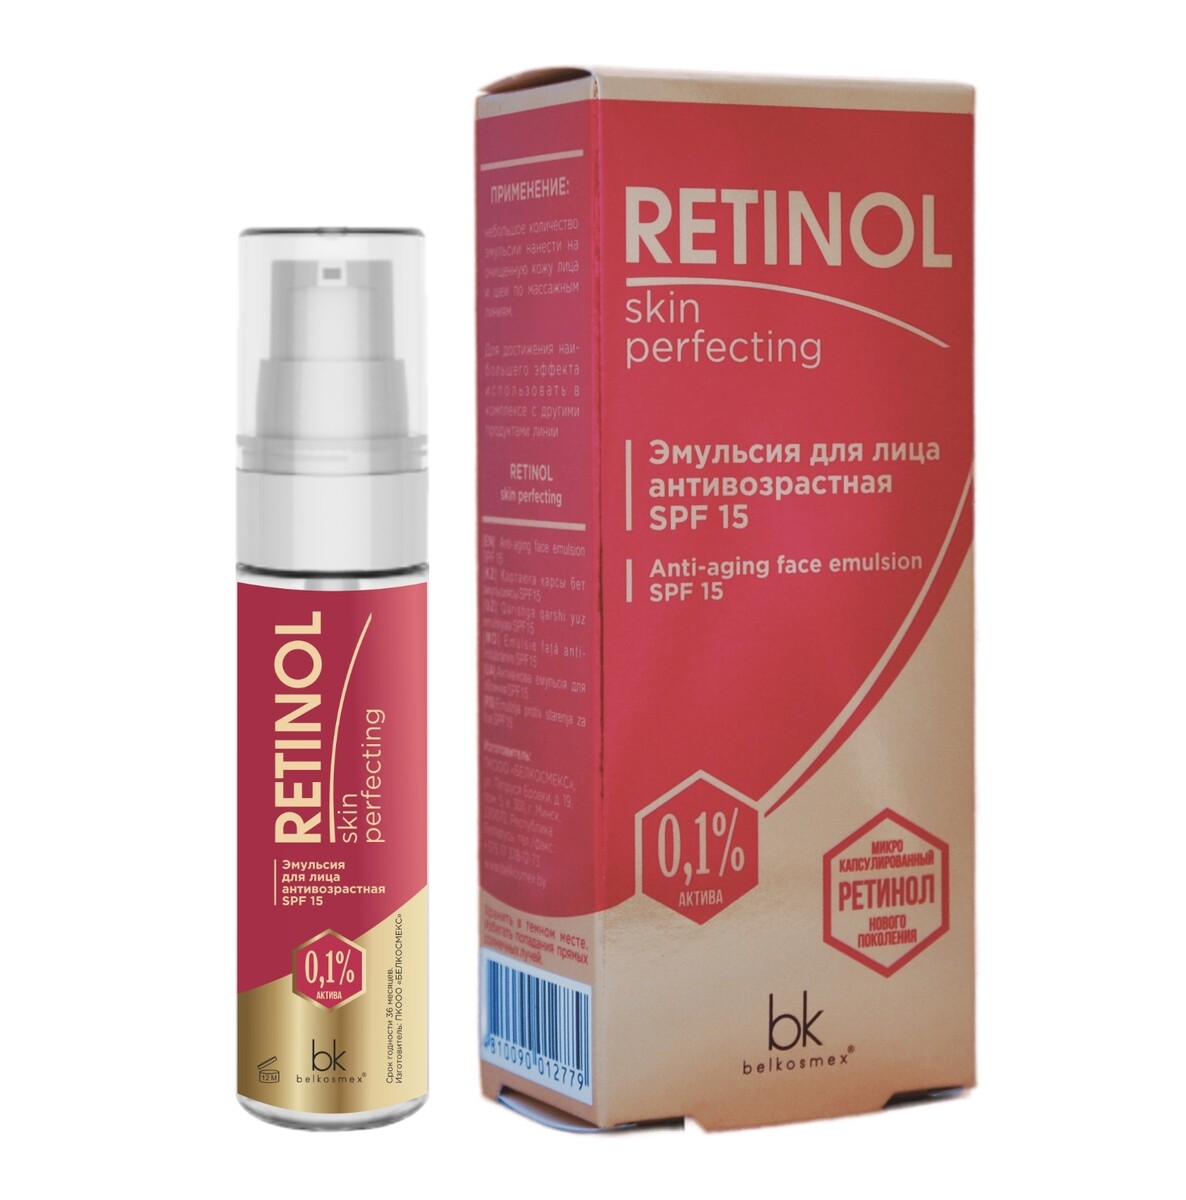 Retinol skin perfecting эмульсия для лица антивозрастная spf 15 30г